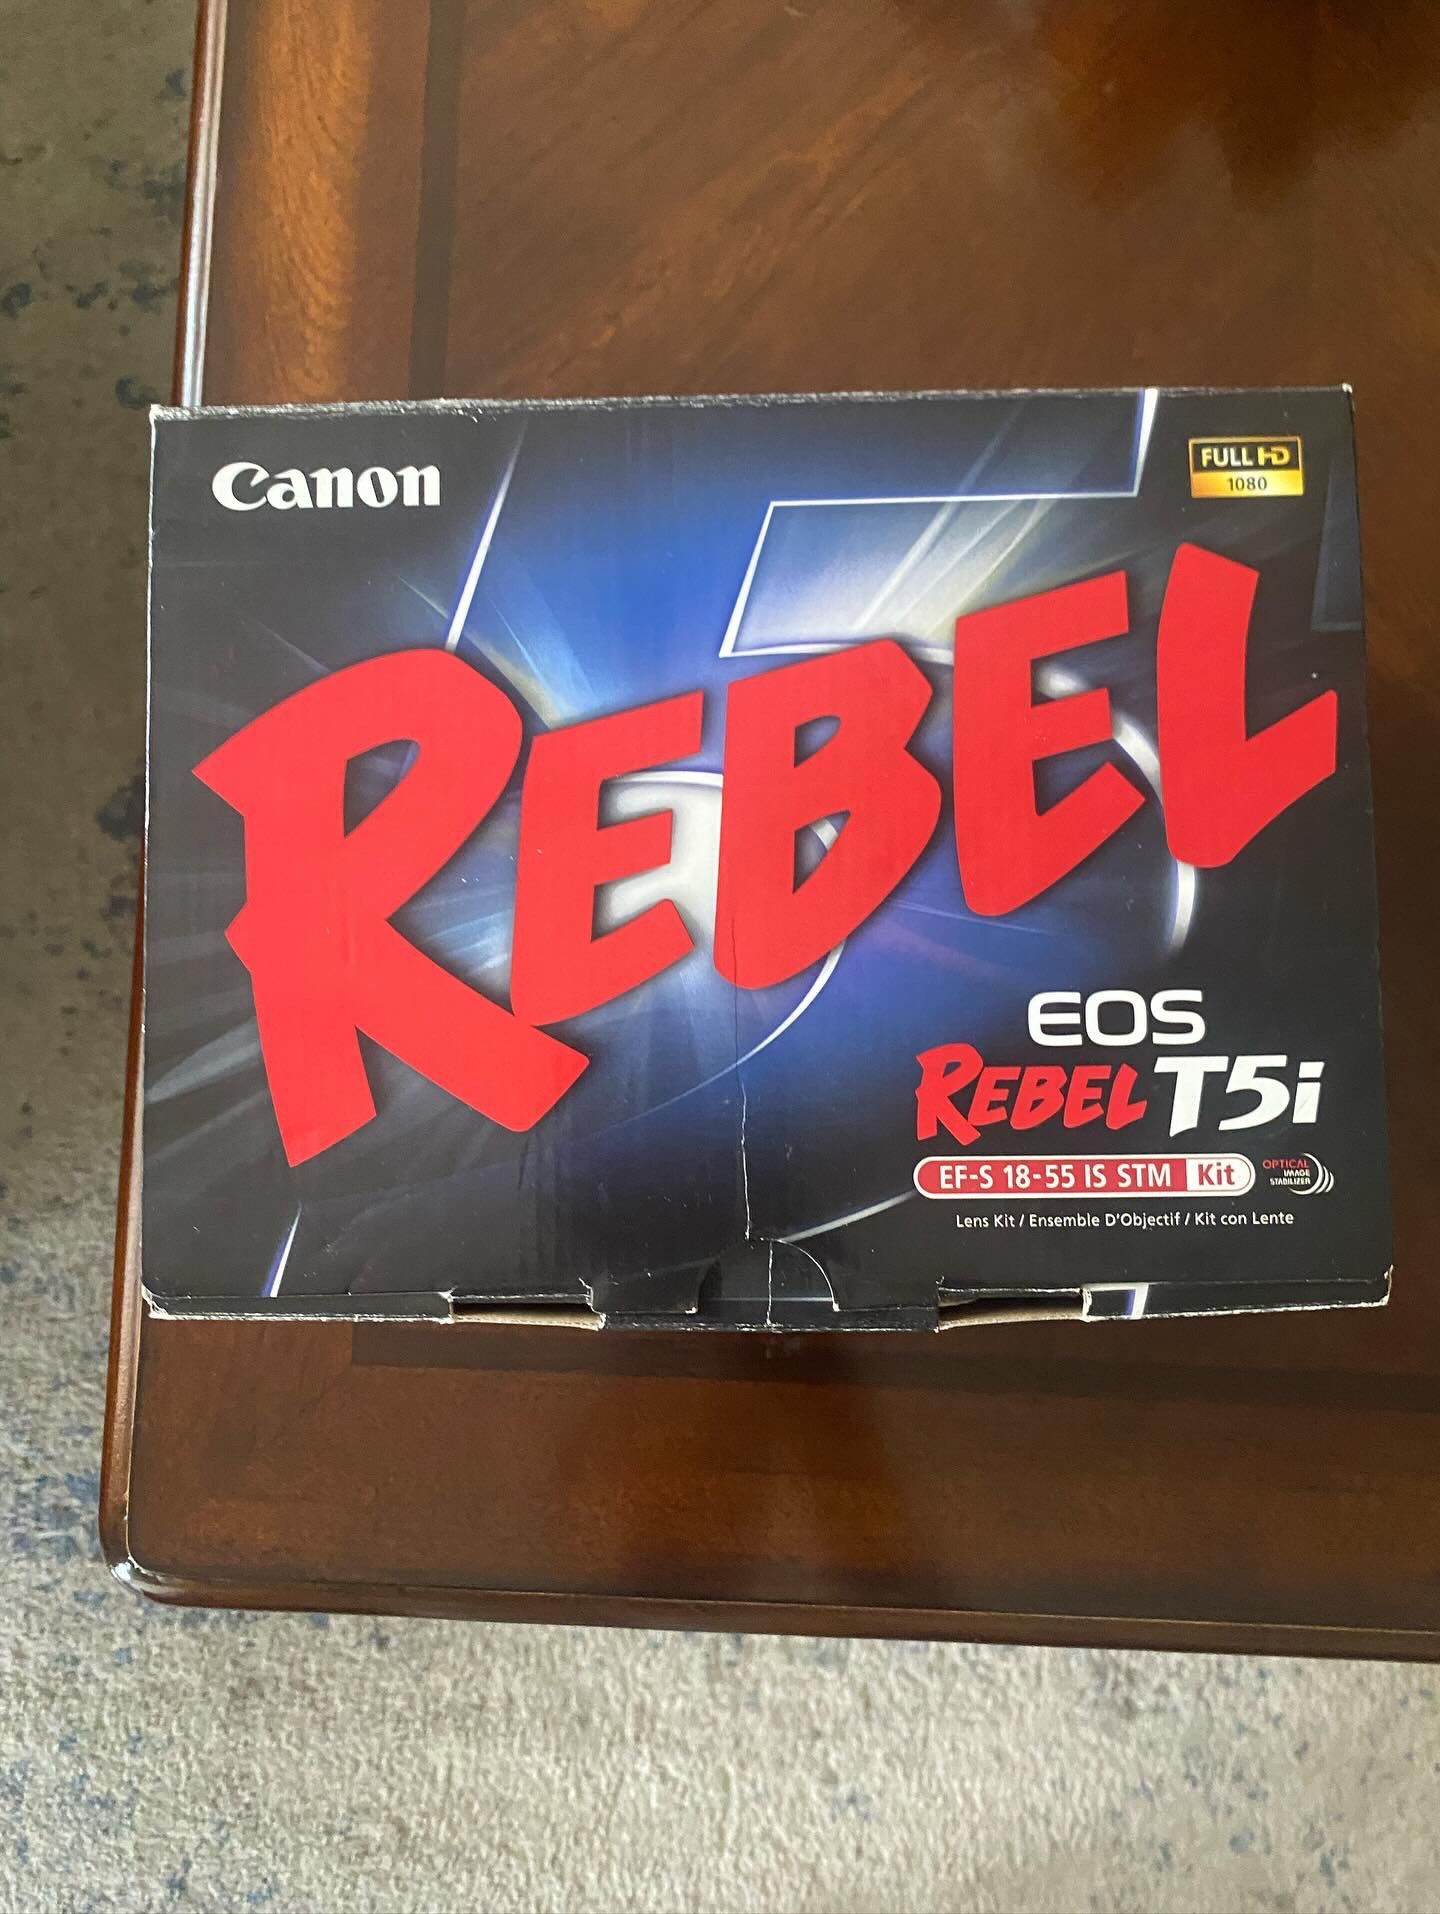 Canon Rebel T5i